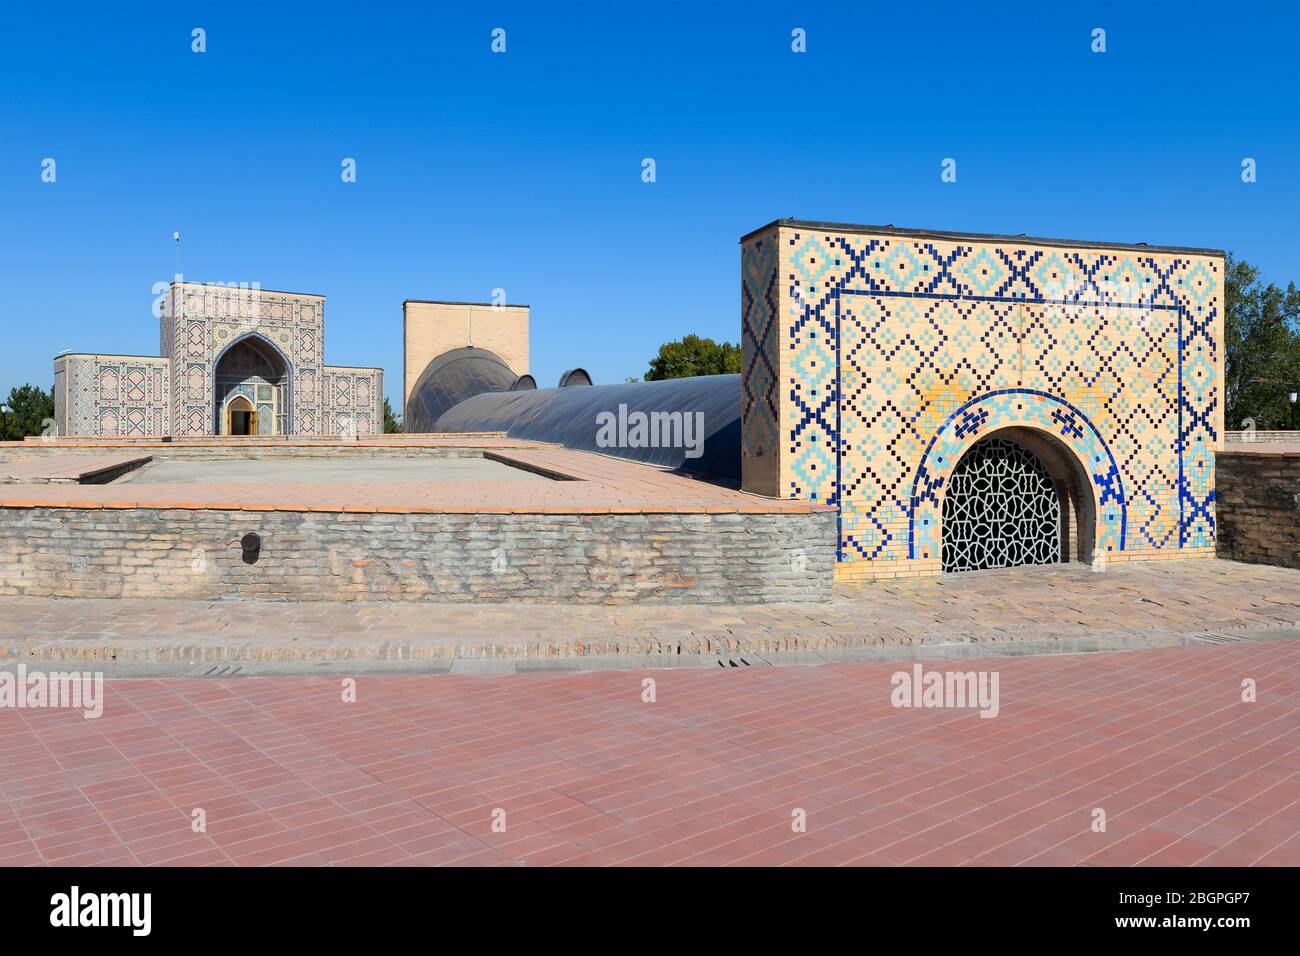 Vue extérieure de l'Observatoire astronomique d'Ulugh Beg à Samarkand, en Ouzbékistan. Construit dans les années 1420 par l'astronome islamique de Timurid Ulugh Beg. Banque D'Images